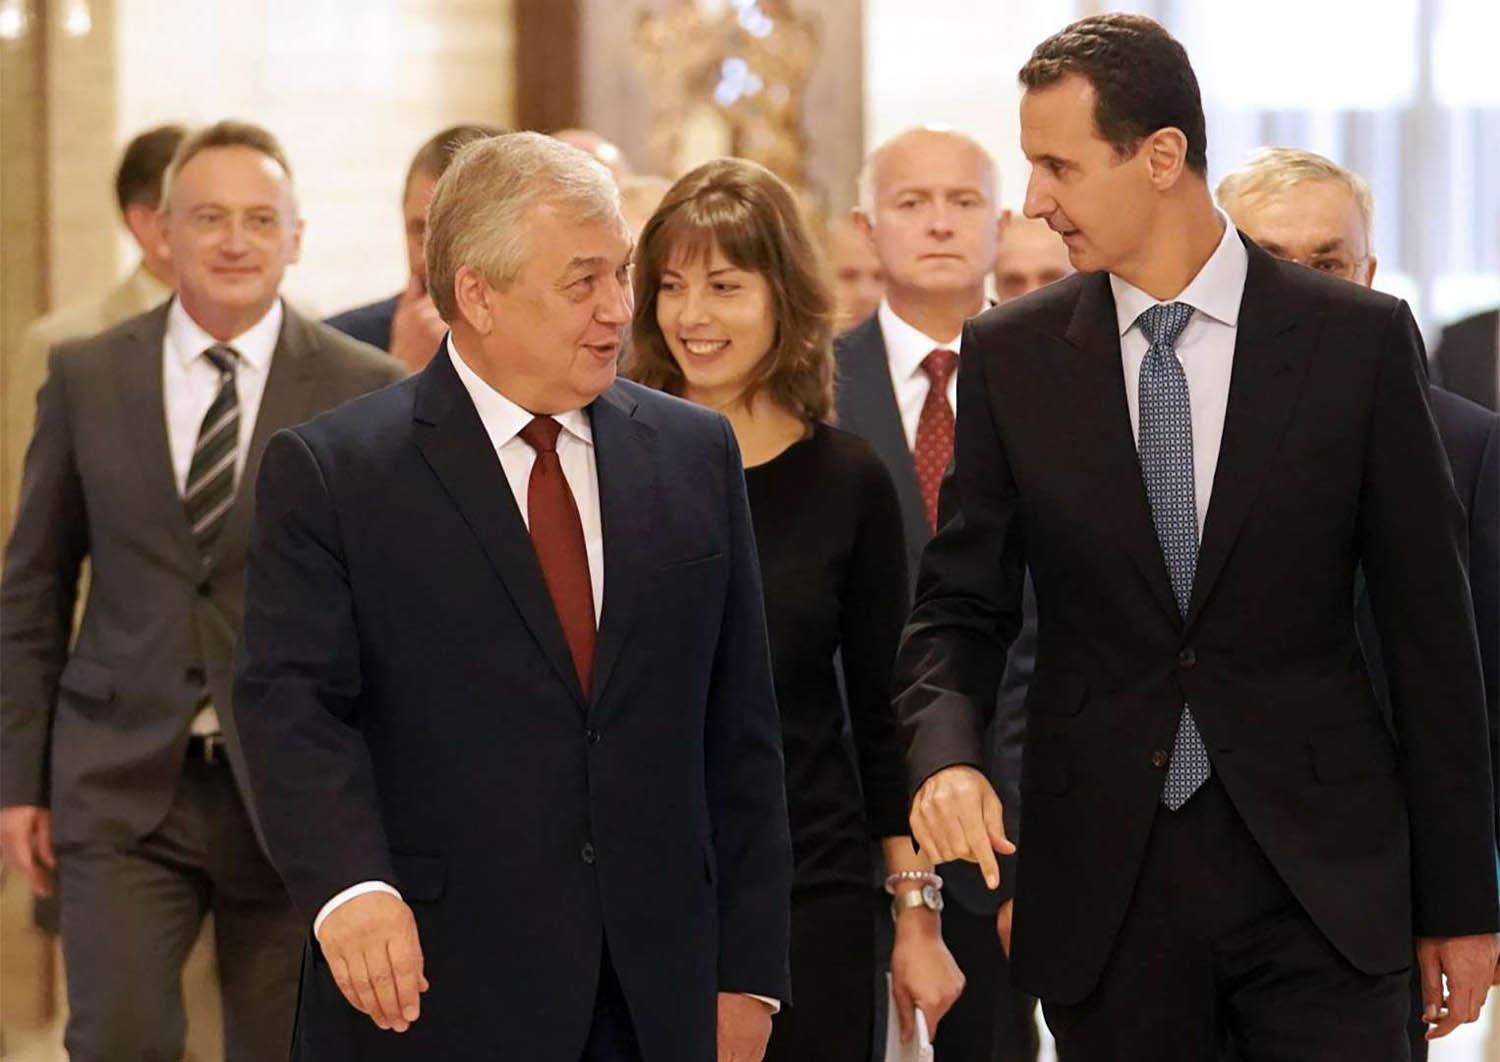 الرئيس السوري بشار الأسد يستقبل المبعوث الروسي الخاص الكسندر لافرانتيف